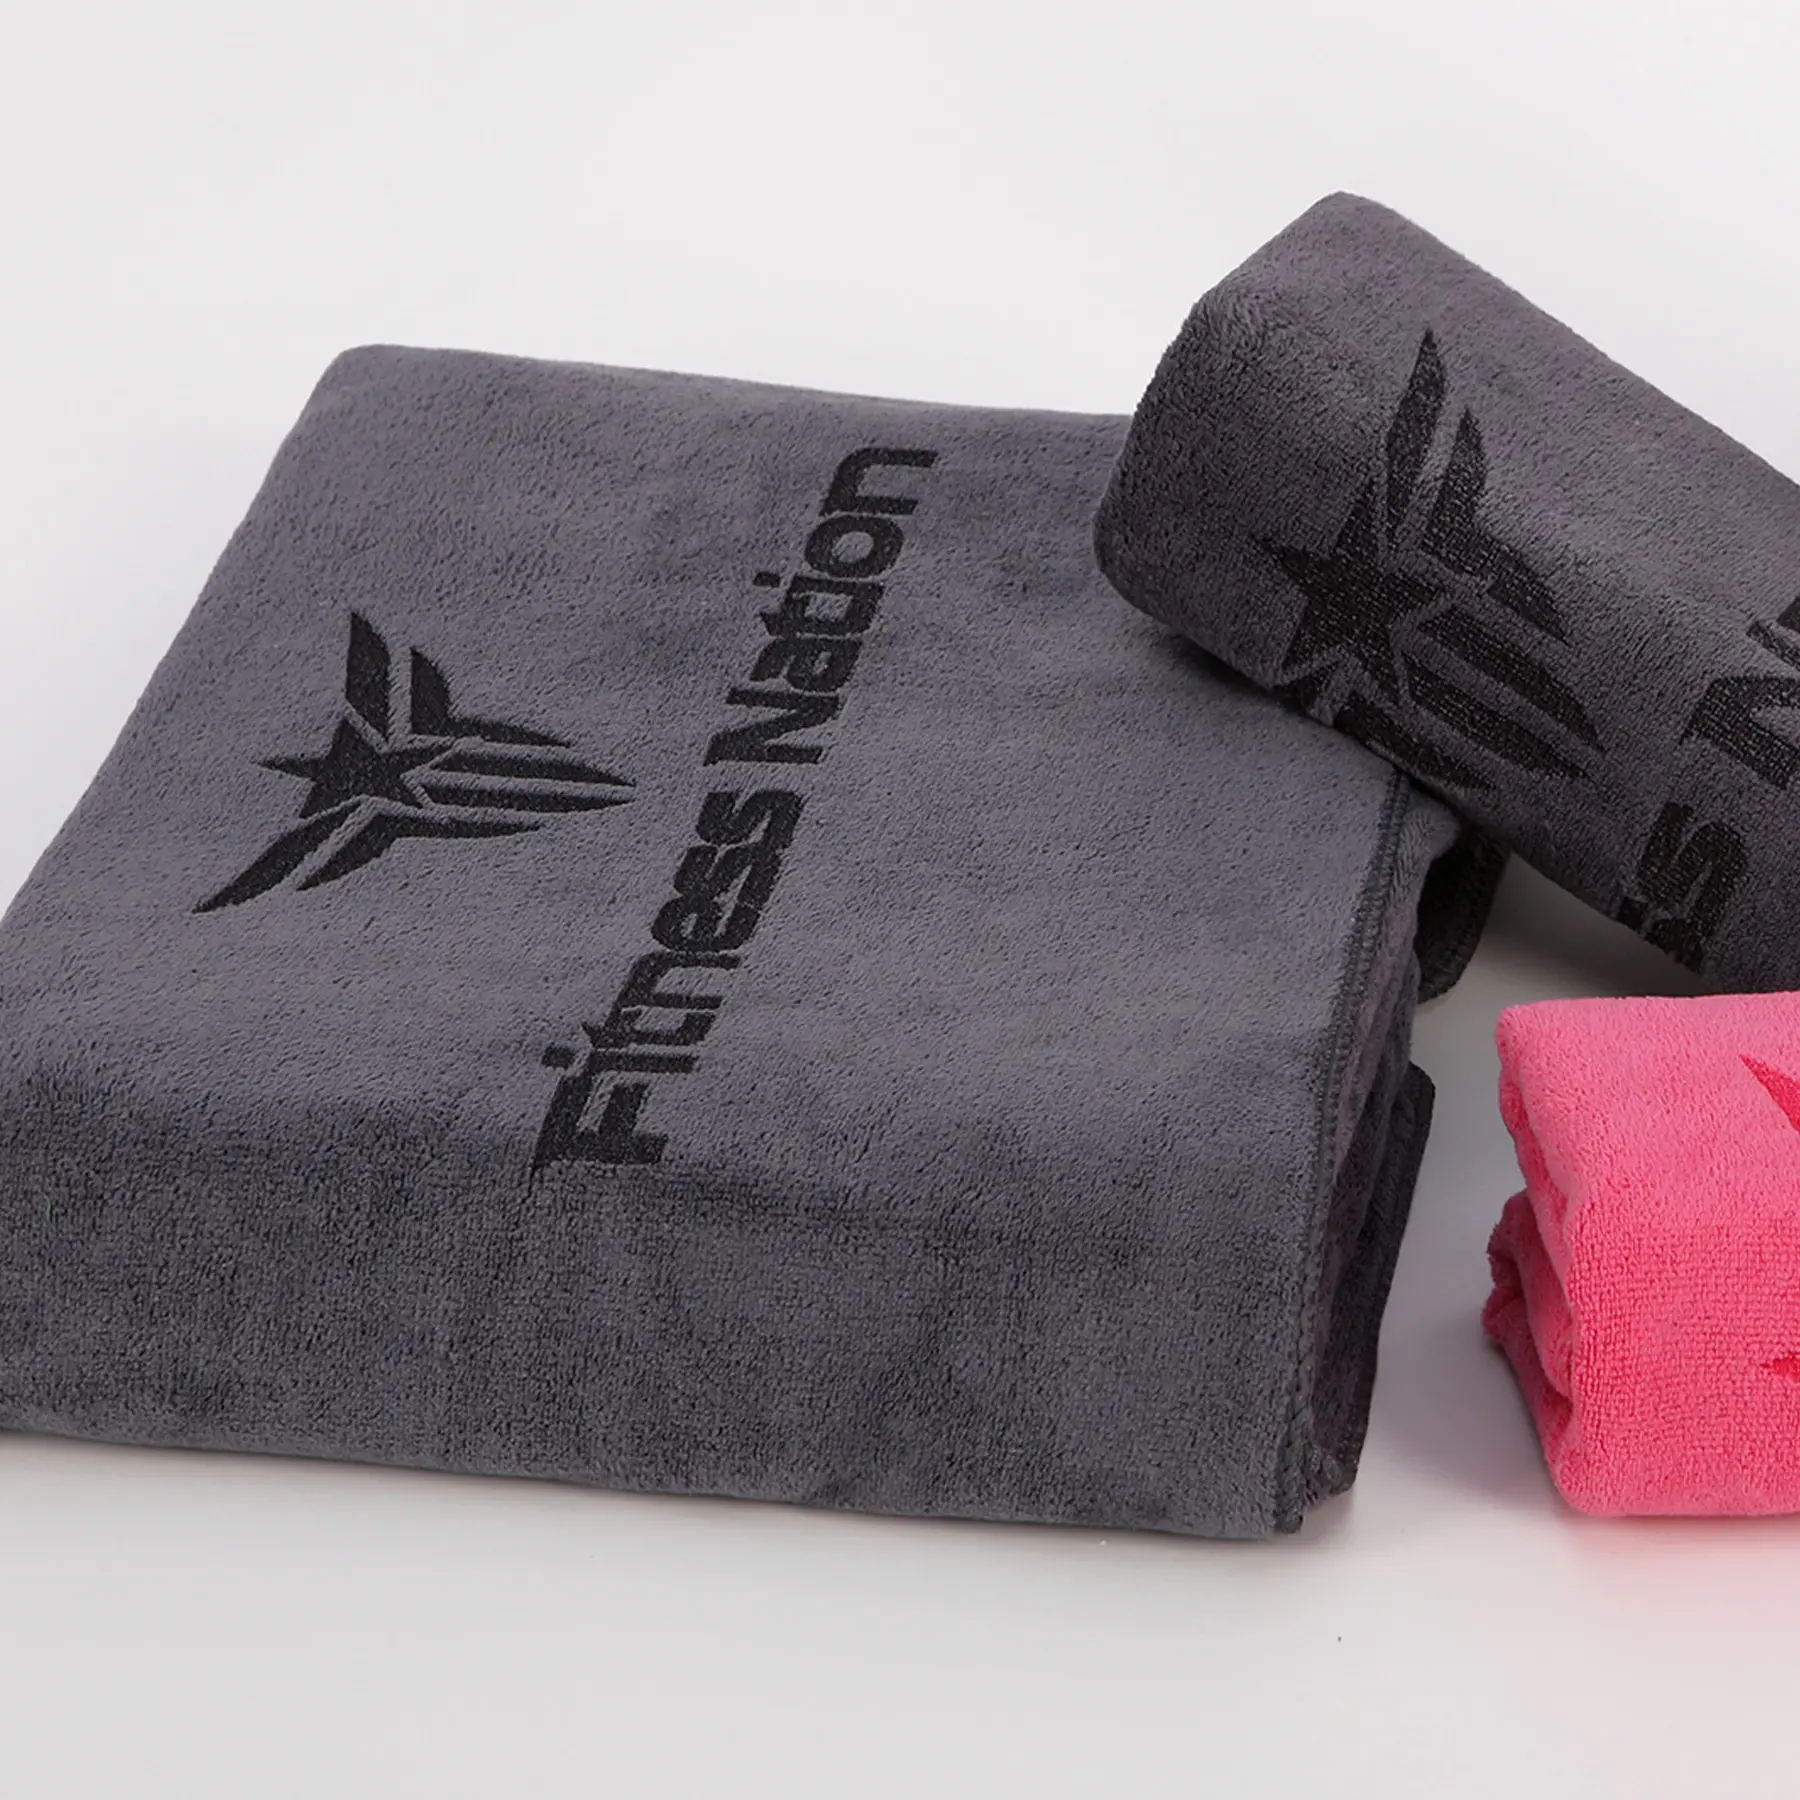 Ensemble de serviettes en microfibre avec logo et couleur de taille personnalisée pour les sports de gym, le yoga, la natation et la course à pied, équipé d'un sac en filet